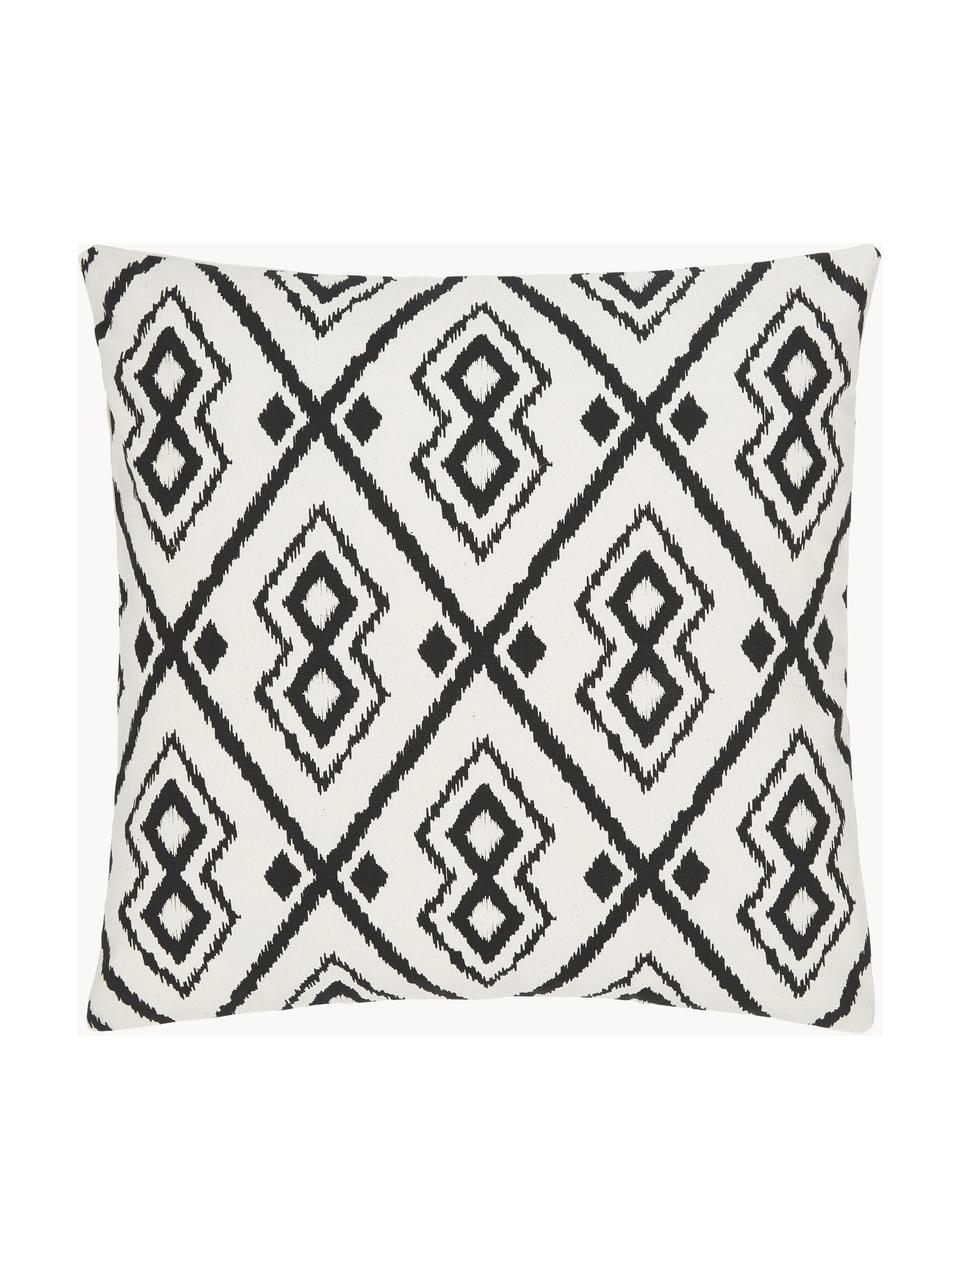 Poszewka na poduszkę w stylu boho Delilah, 100% bawełna, Biały, czarny, S 45 x D 45 cm